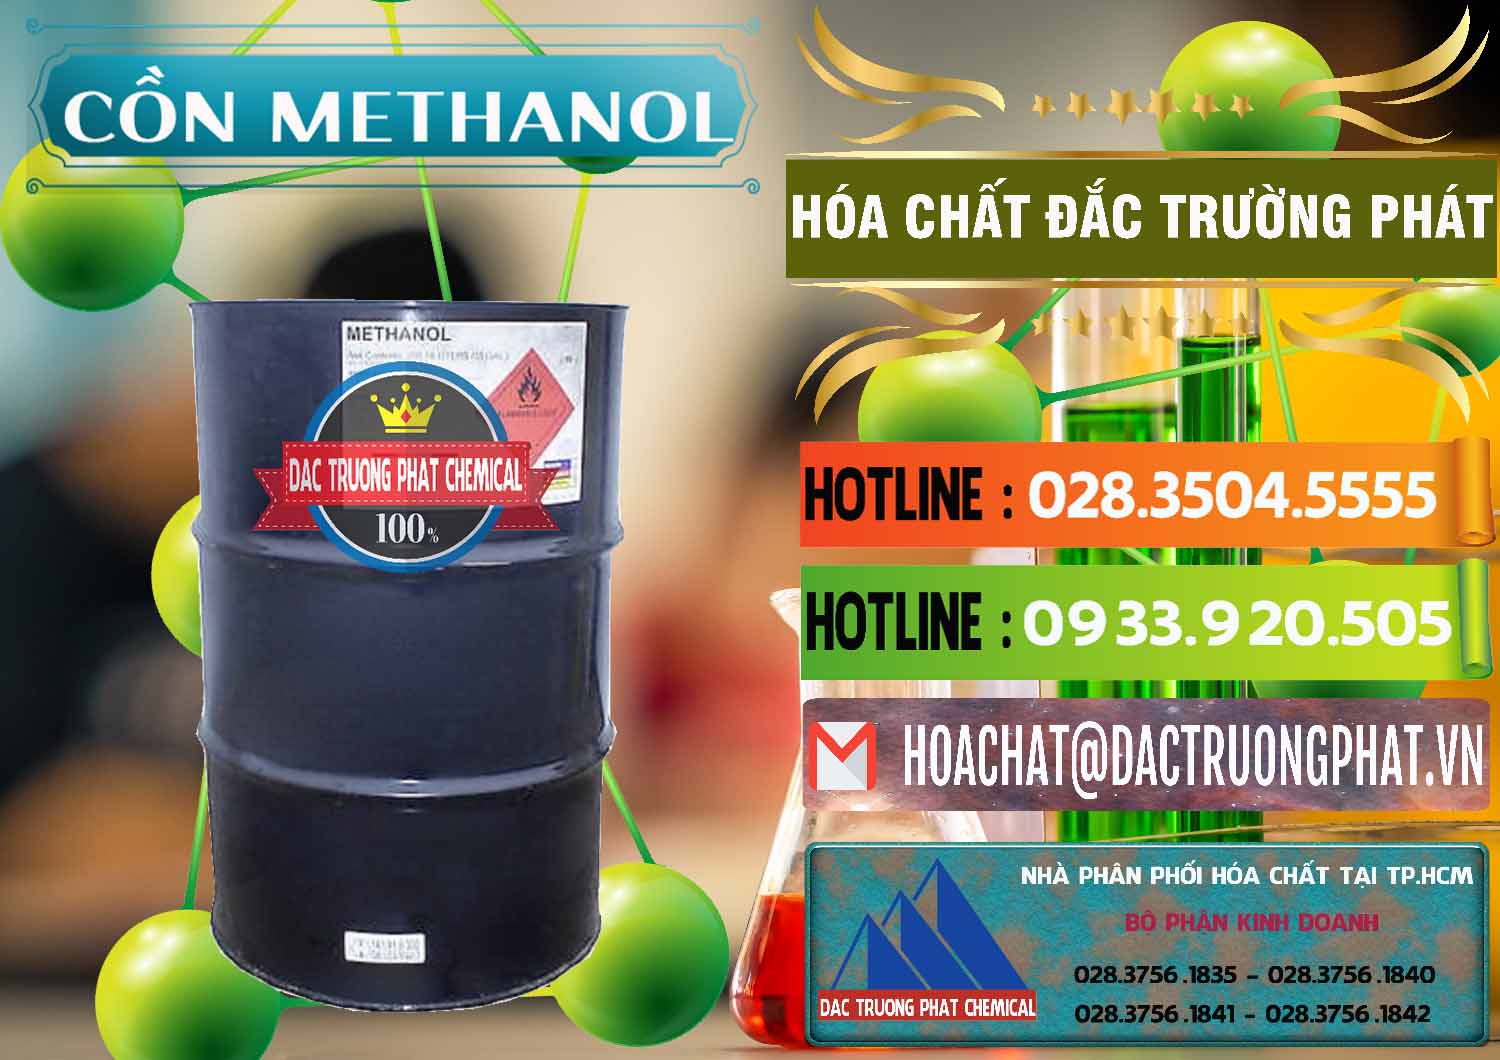 Đơn vị chuyên bán & cung ứng Cồn Methanol - Methyl Alcohol Mã Lai Malaysia - 0331 - Cty phân phối & nhập khẩu hóa chất tại TP.HCM - cungcaphoachat.com.vn